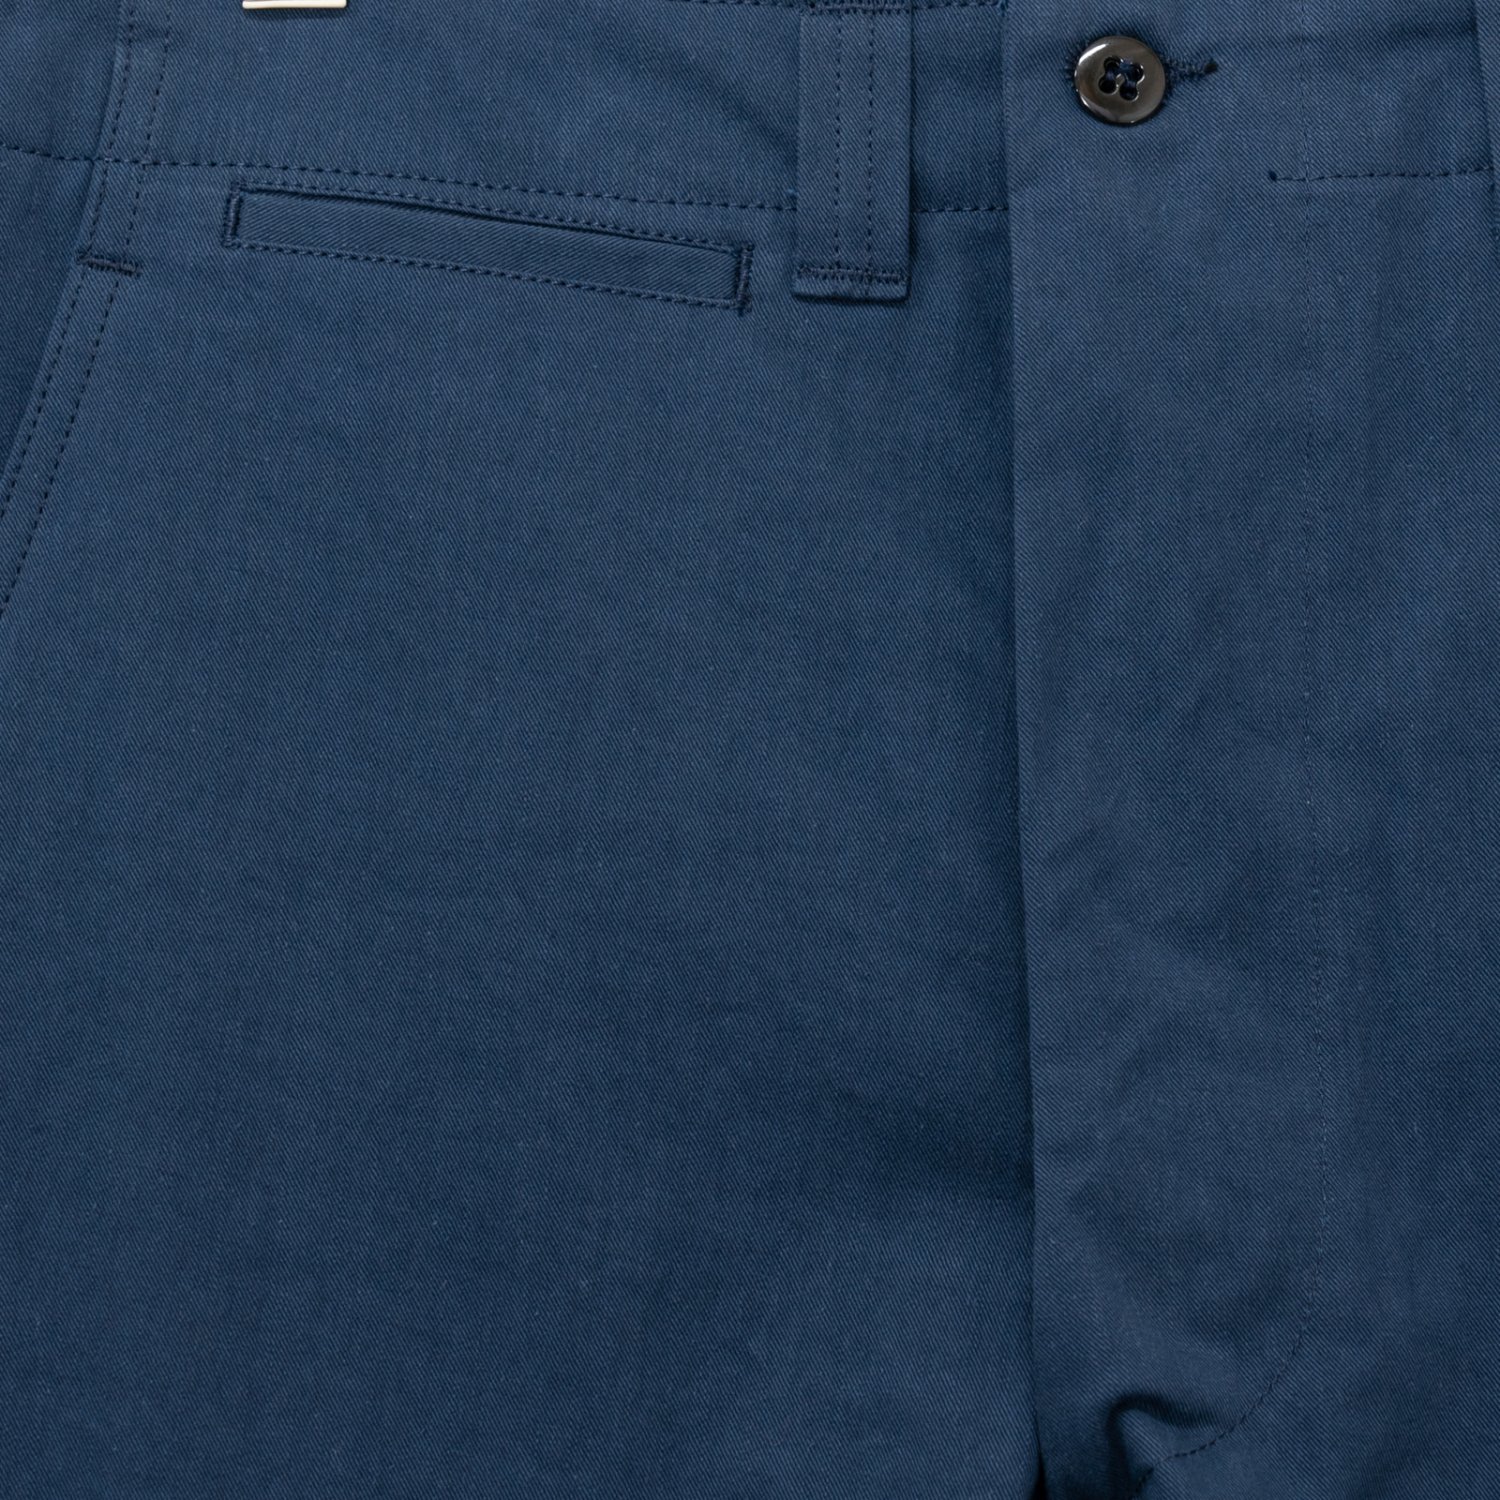 TUKI * Field Trousers * Ink Blue